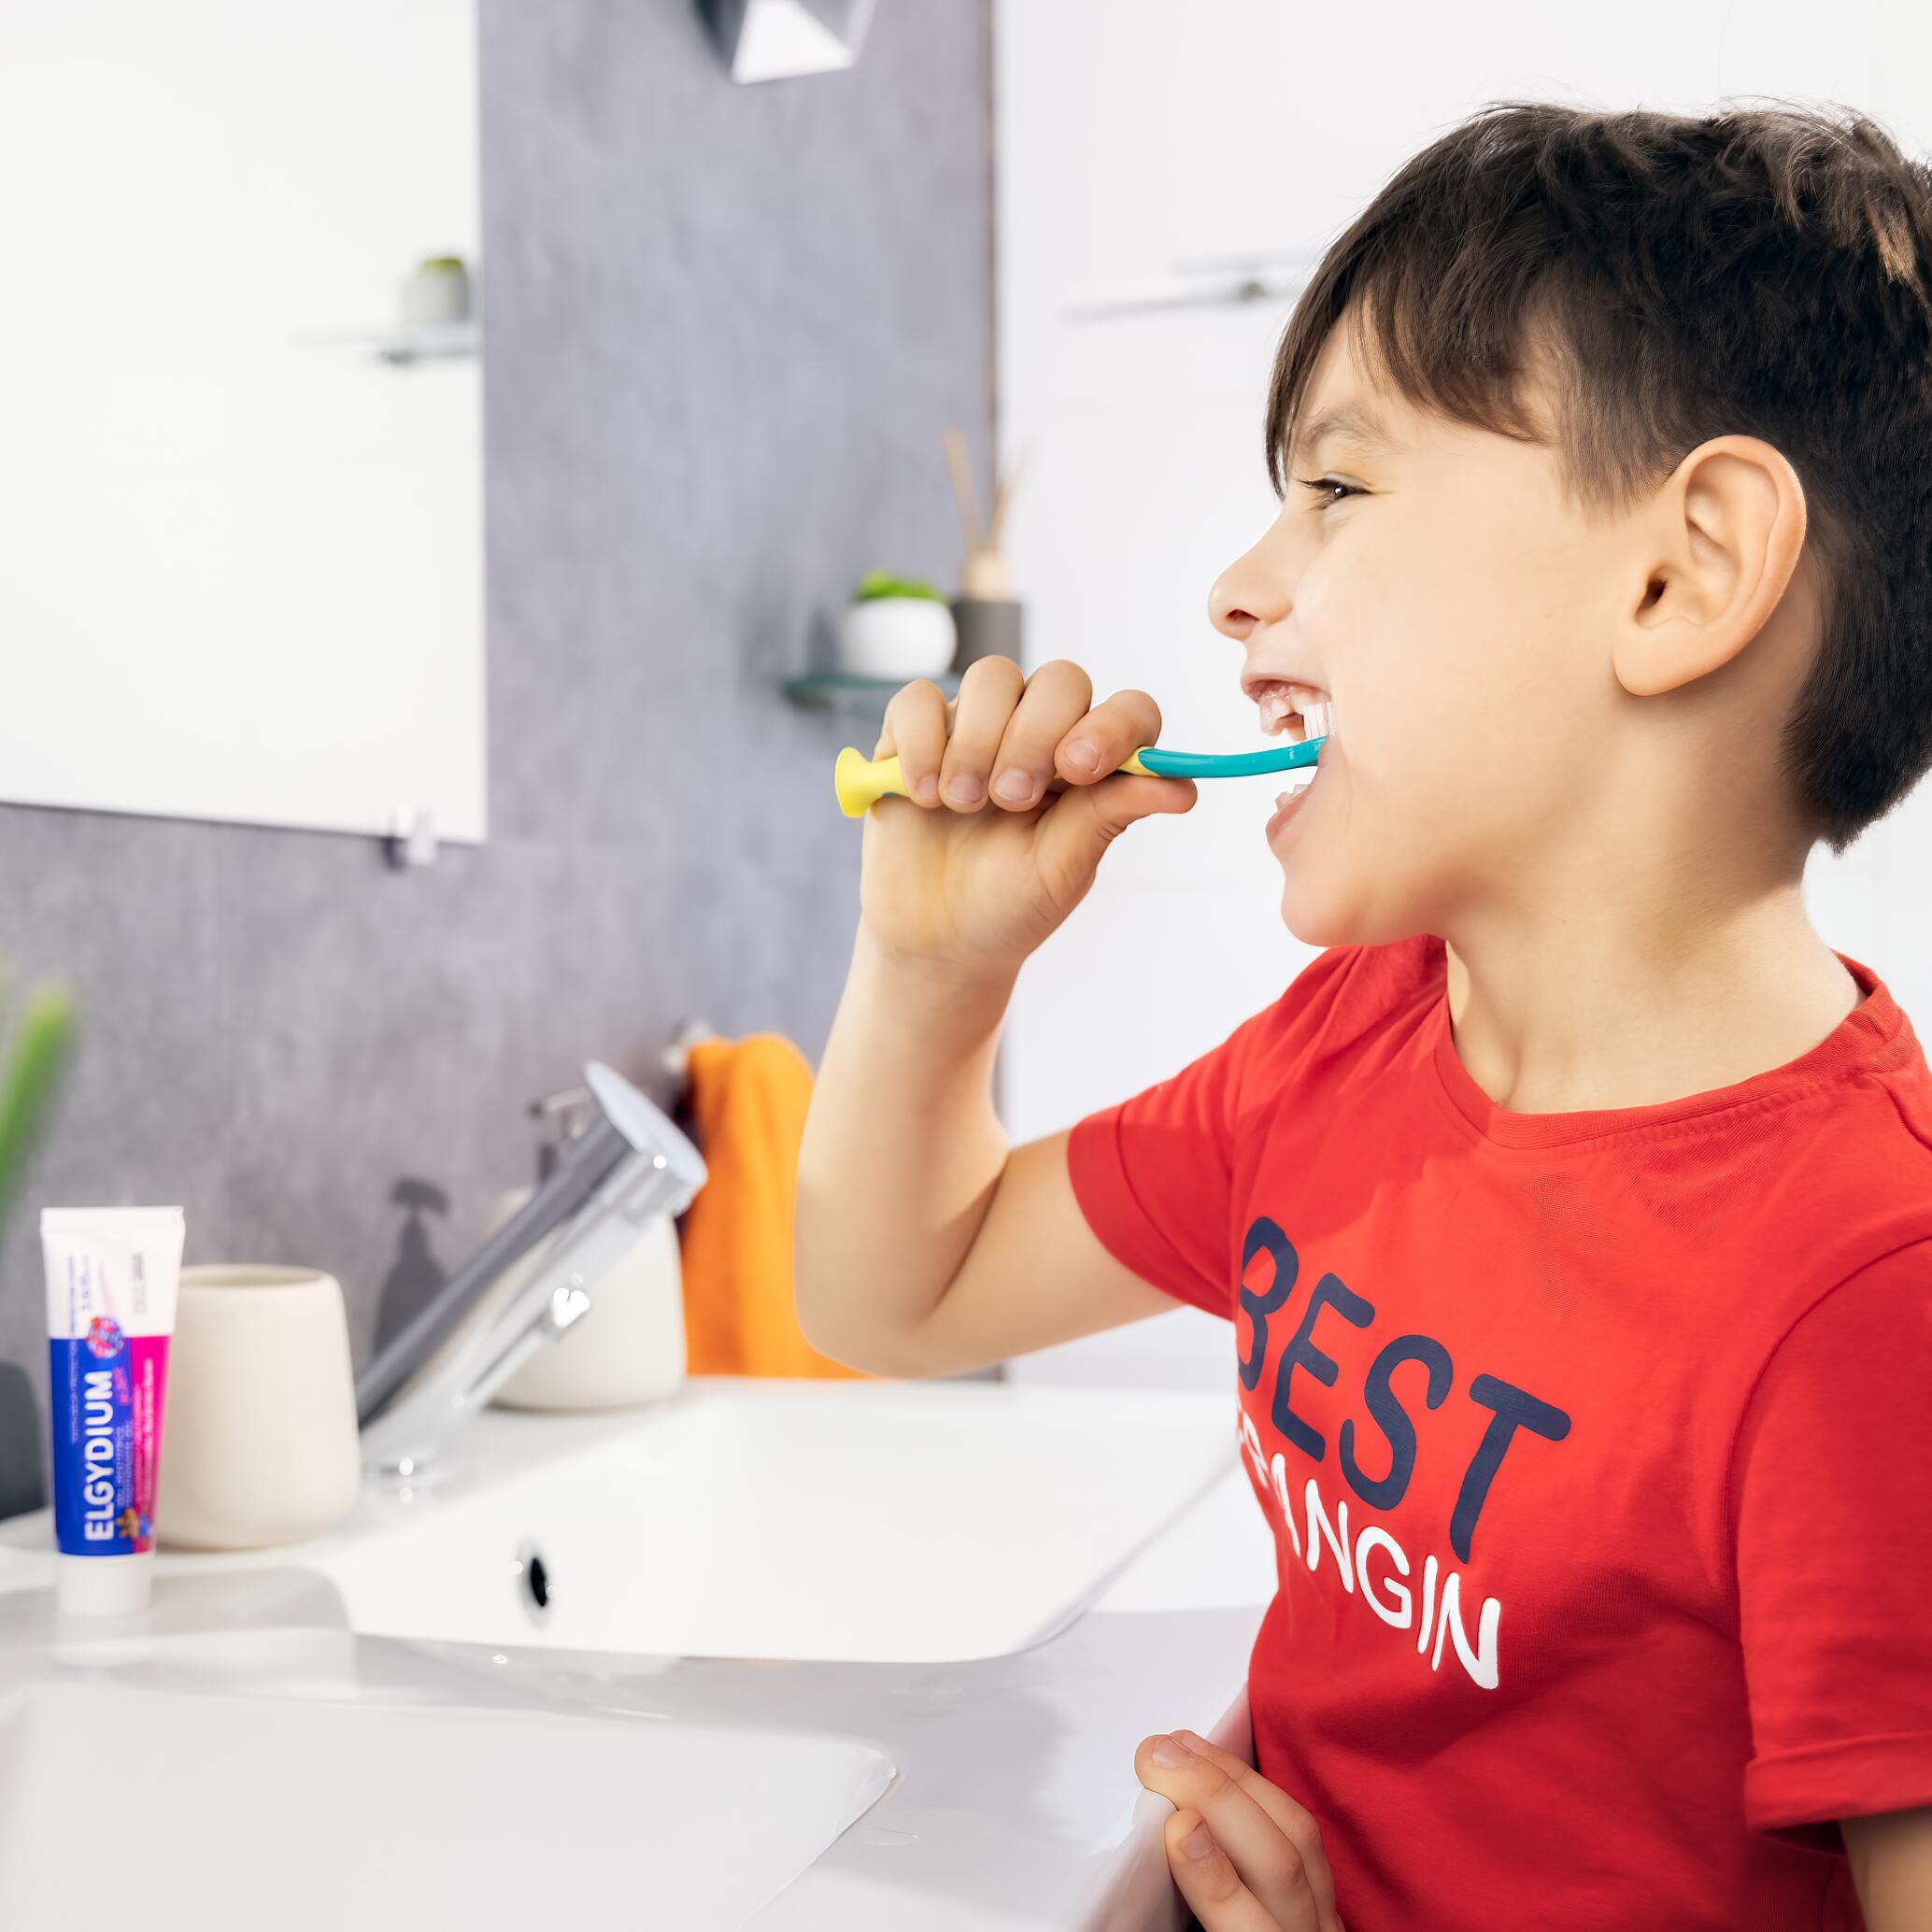 Comment nettoyer les dents de bébé ?